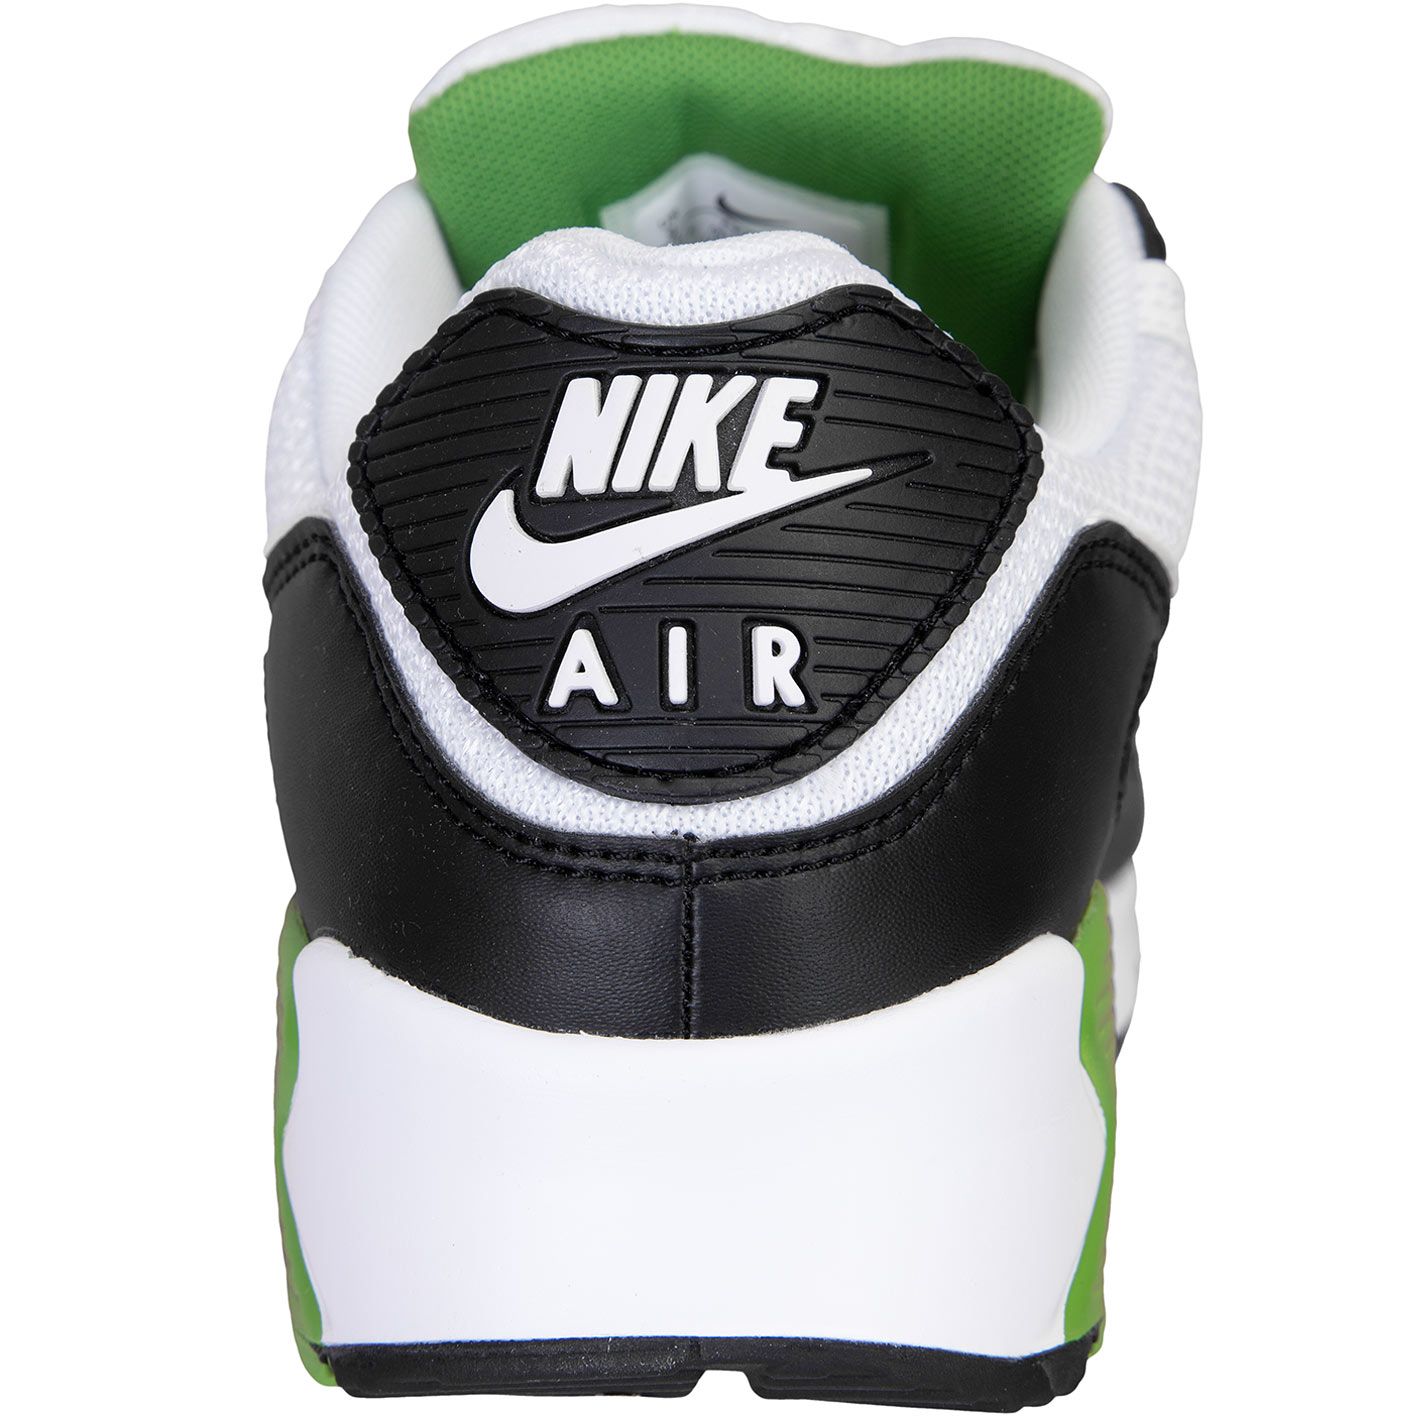 ☆ Nike Air Sneaker weiß/grün hier bestellen!